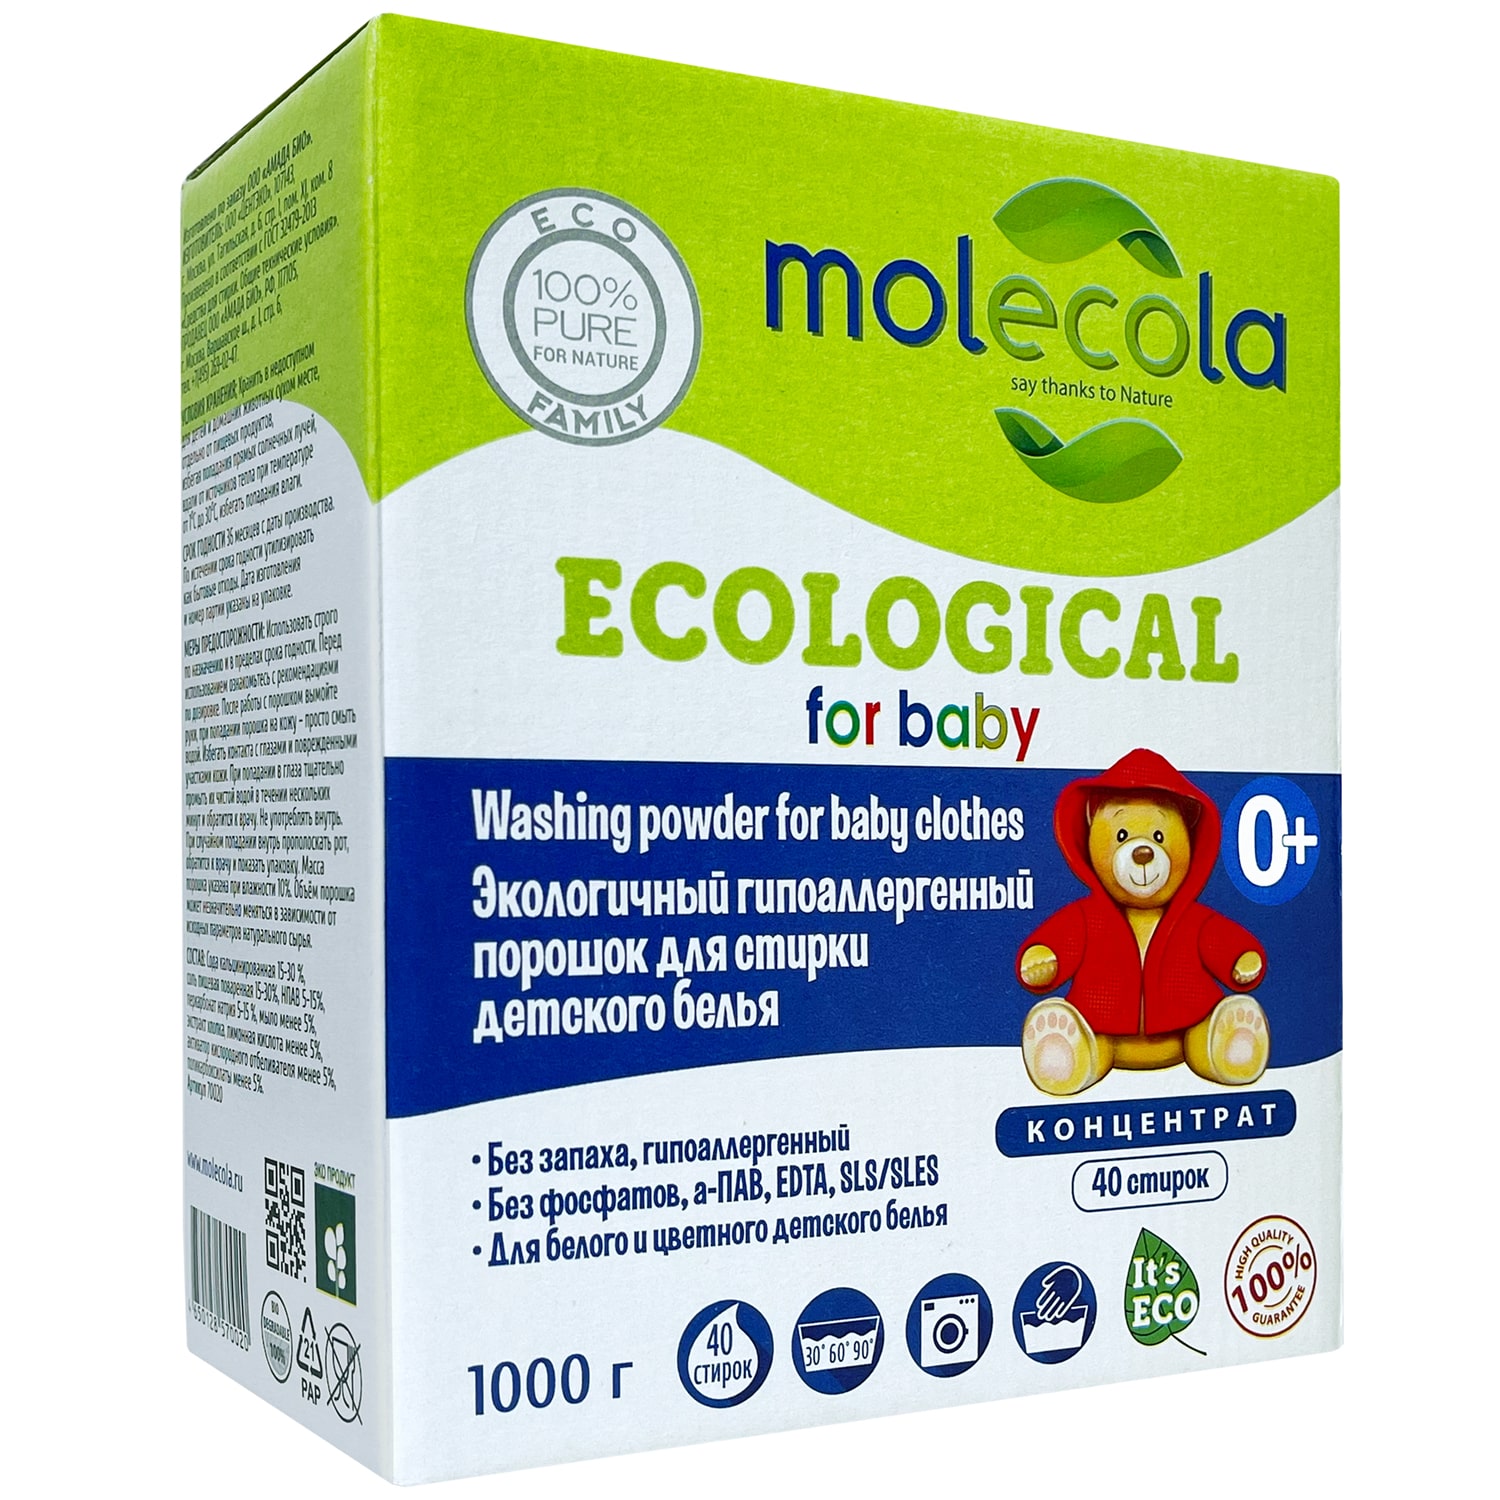 Molecola Стиральный порошок (концентрат) для стирки детского белья, гипоаллергенный, экологичный, 1000 г (Molecola, Детская серия)